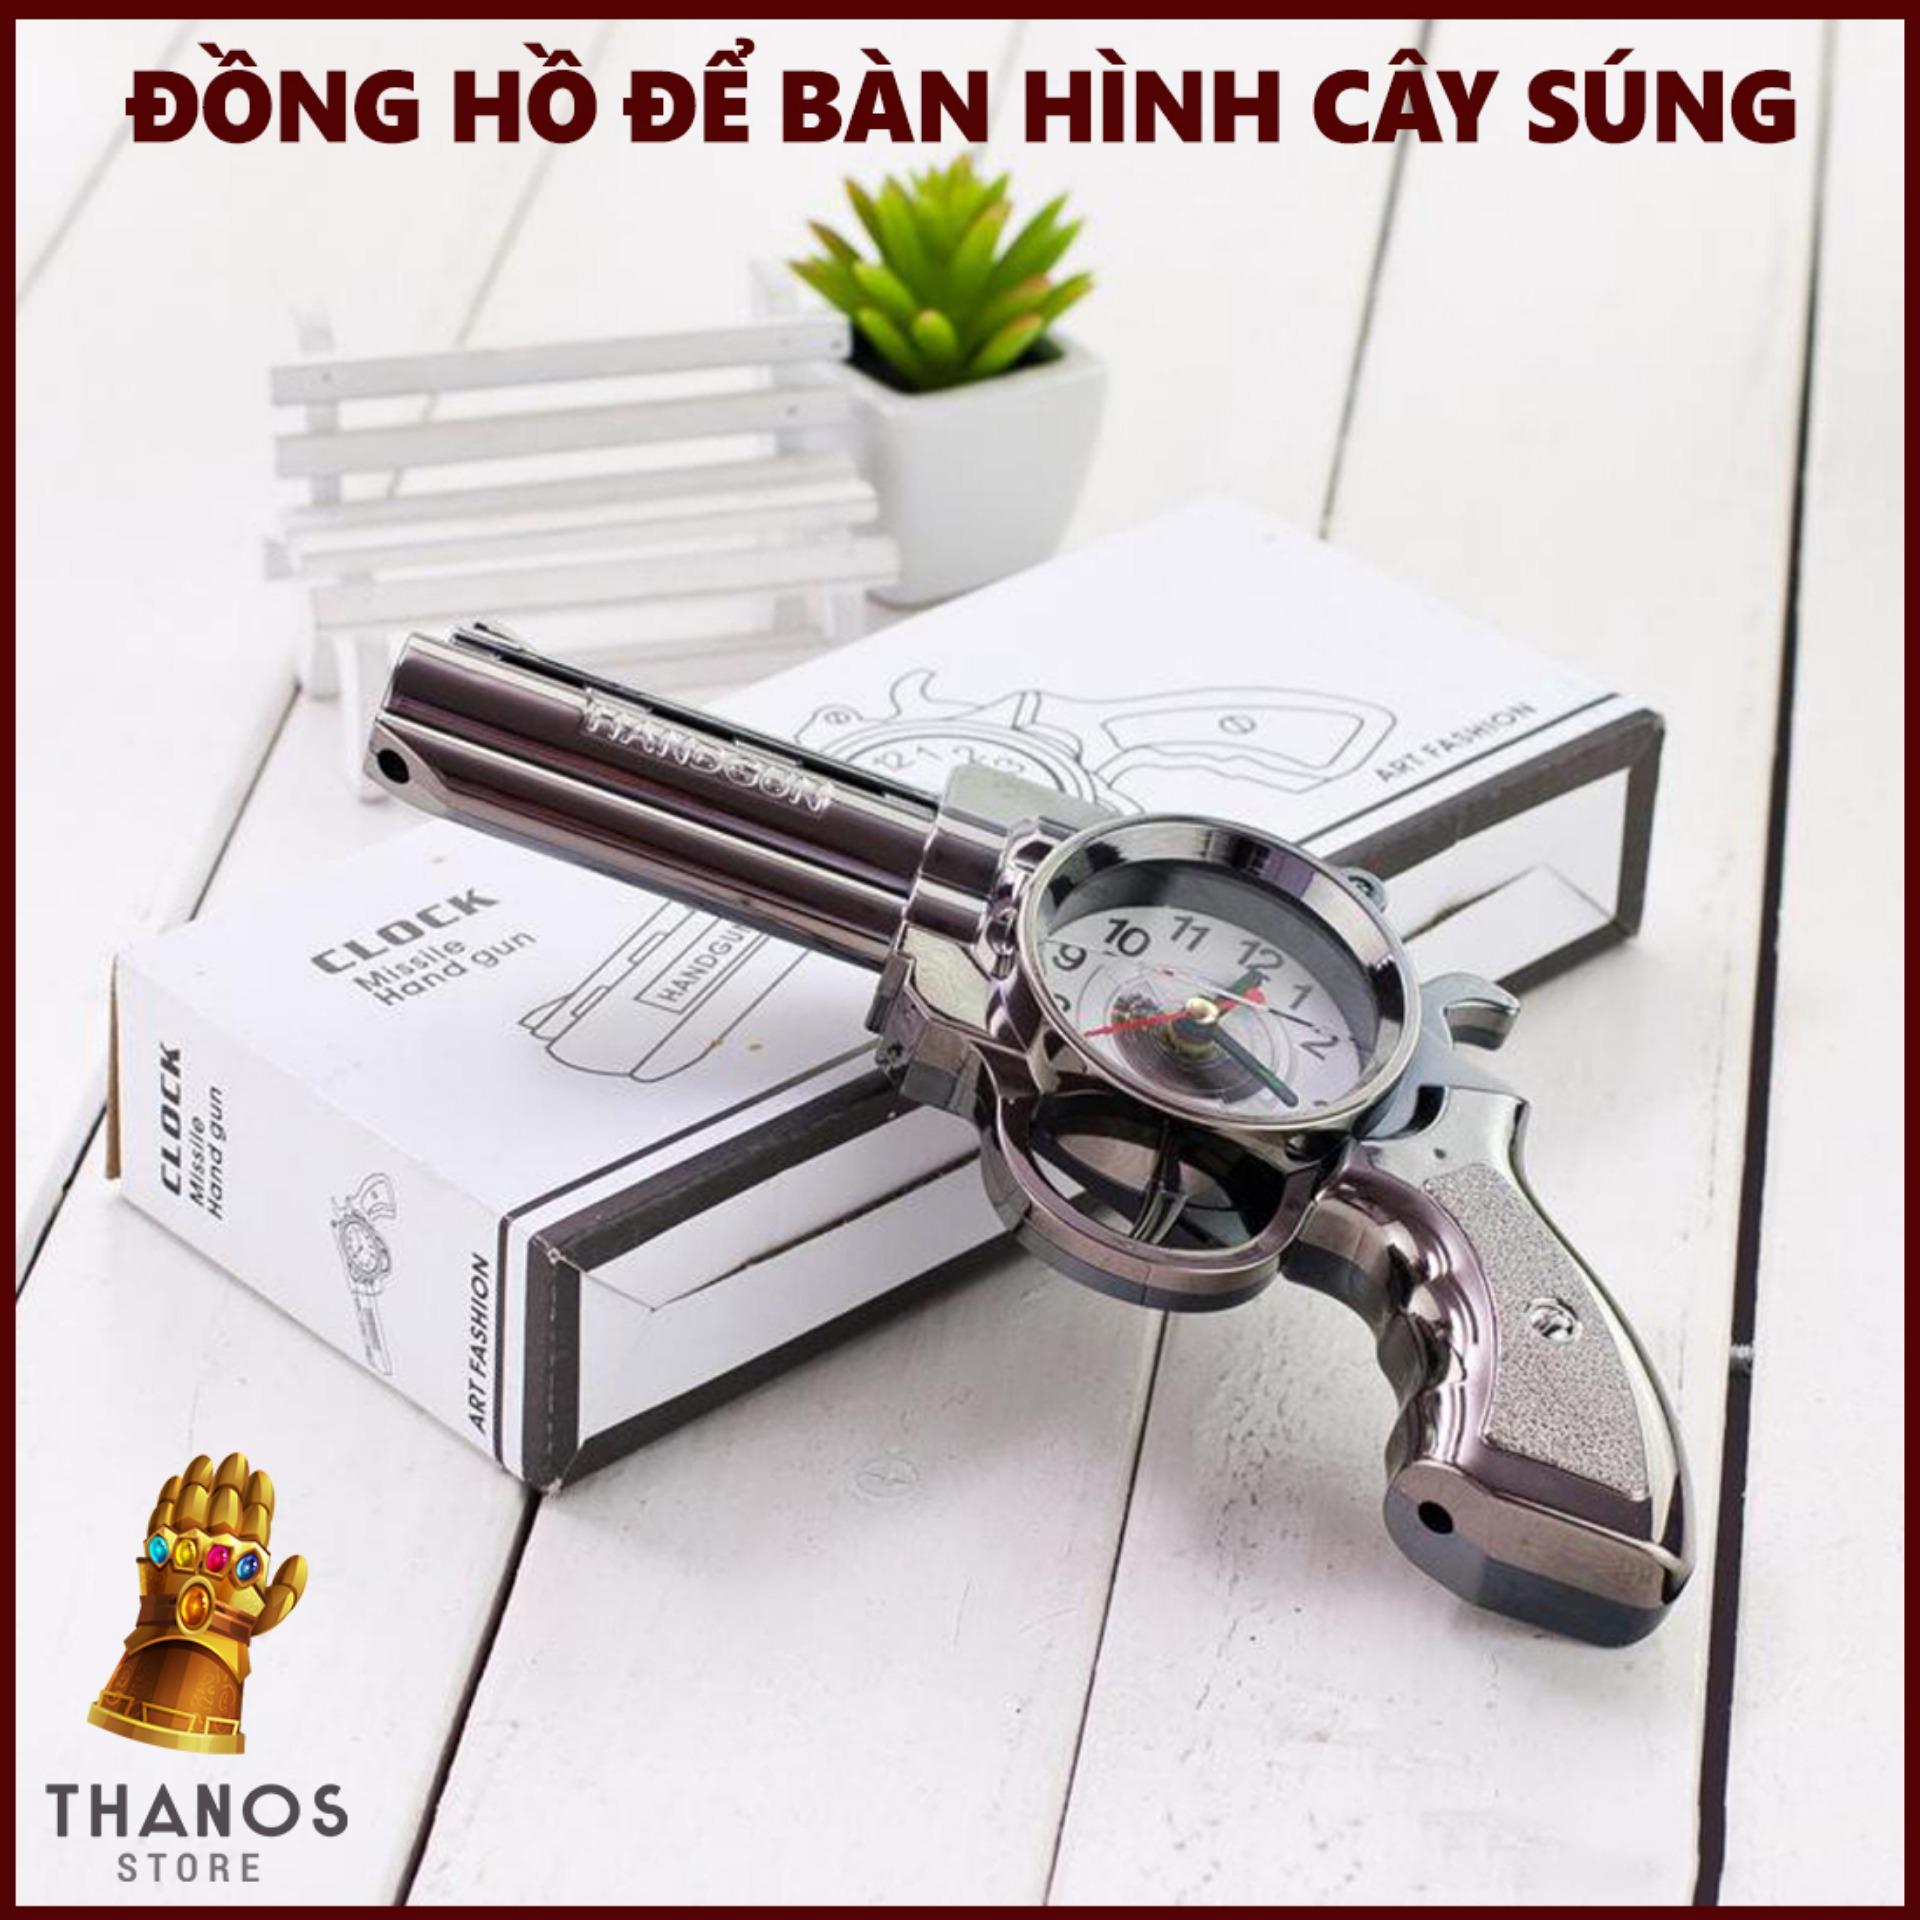 Đồng hồ để bàn hình cây sún.g - Thanos Store